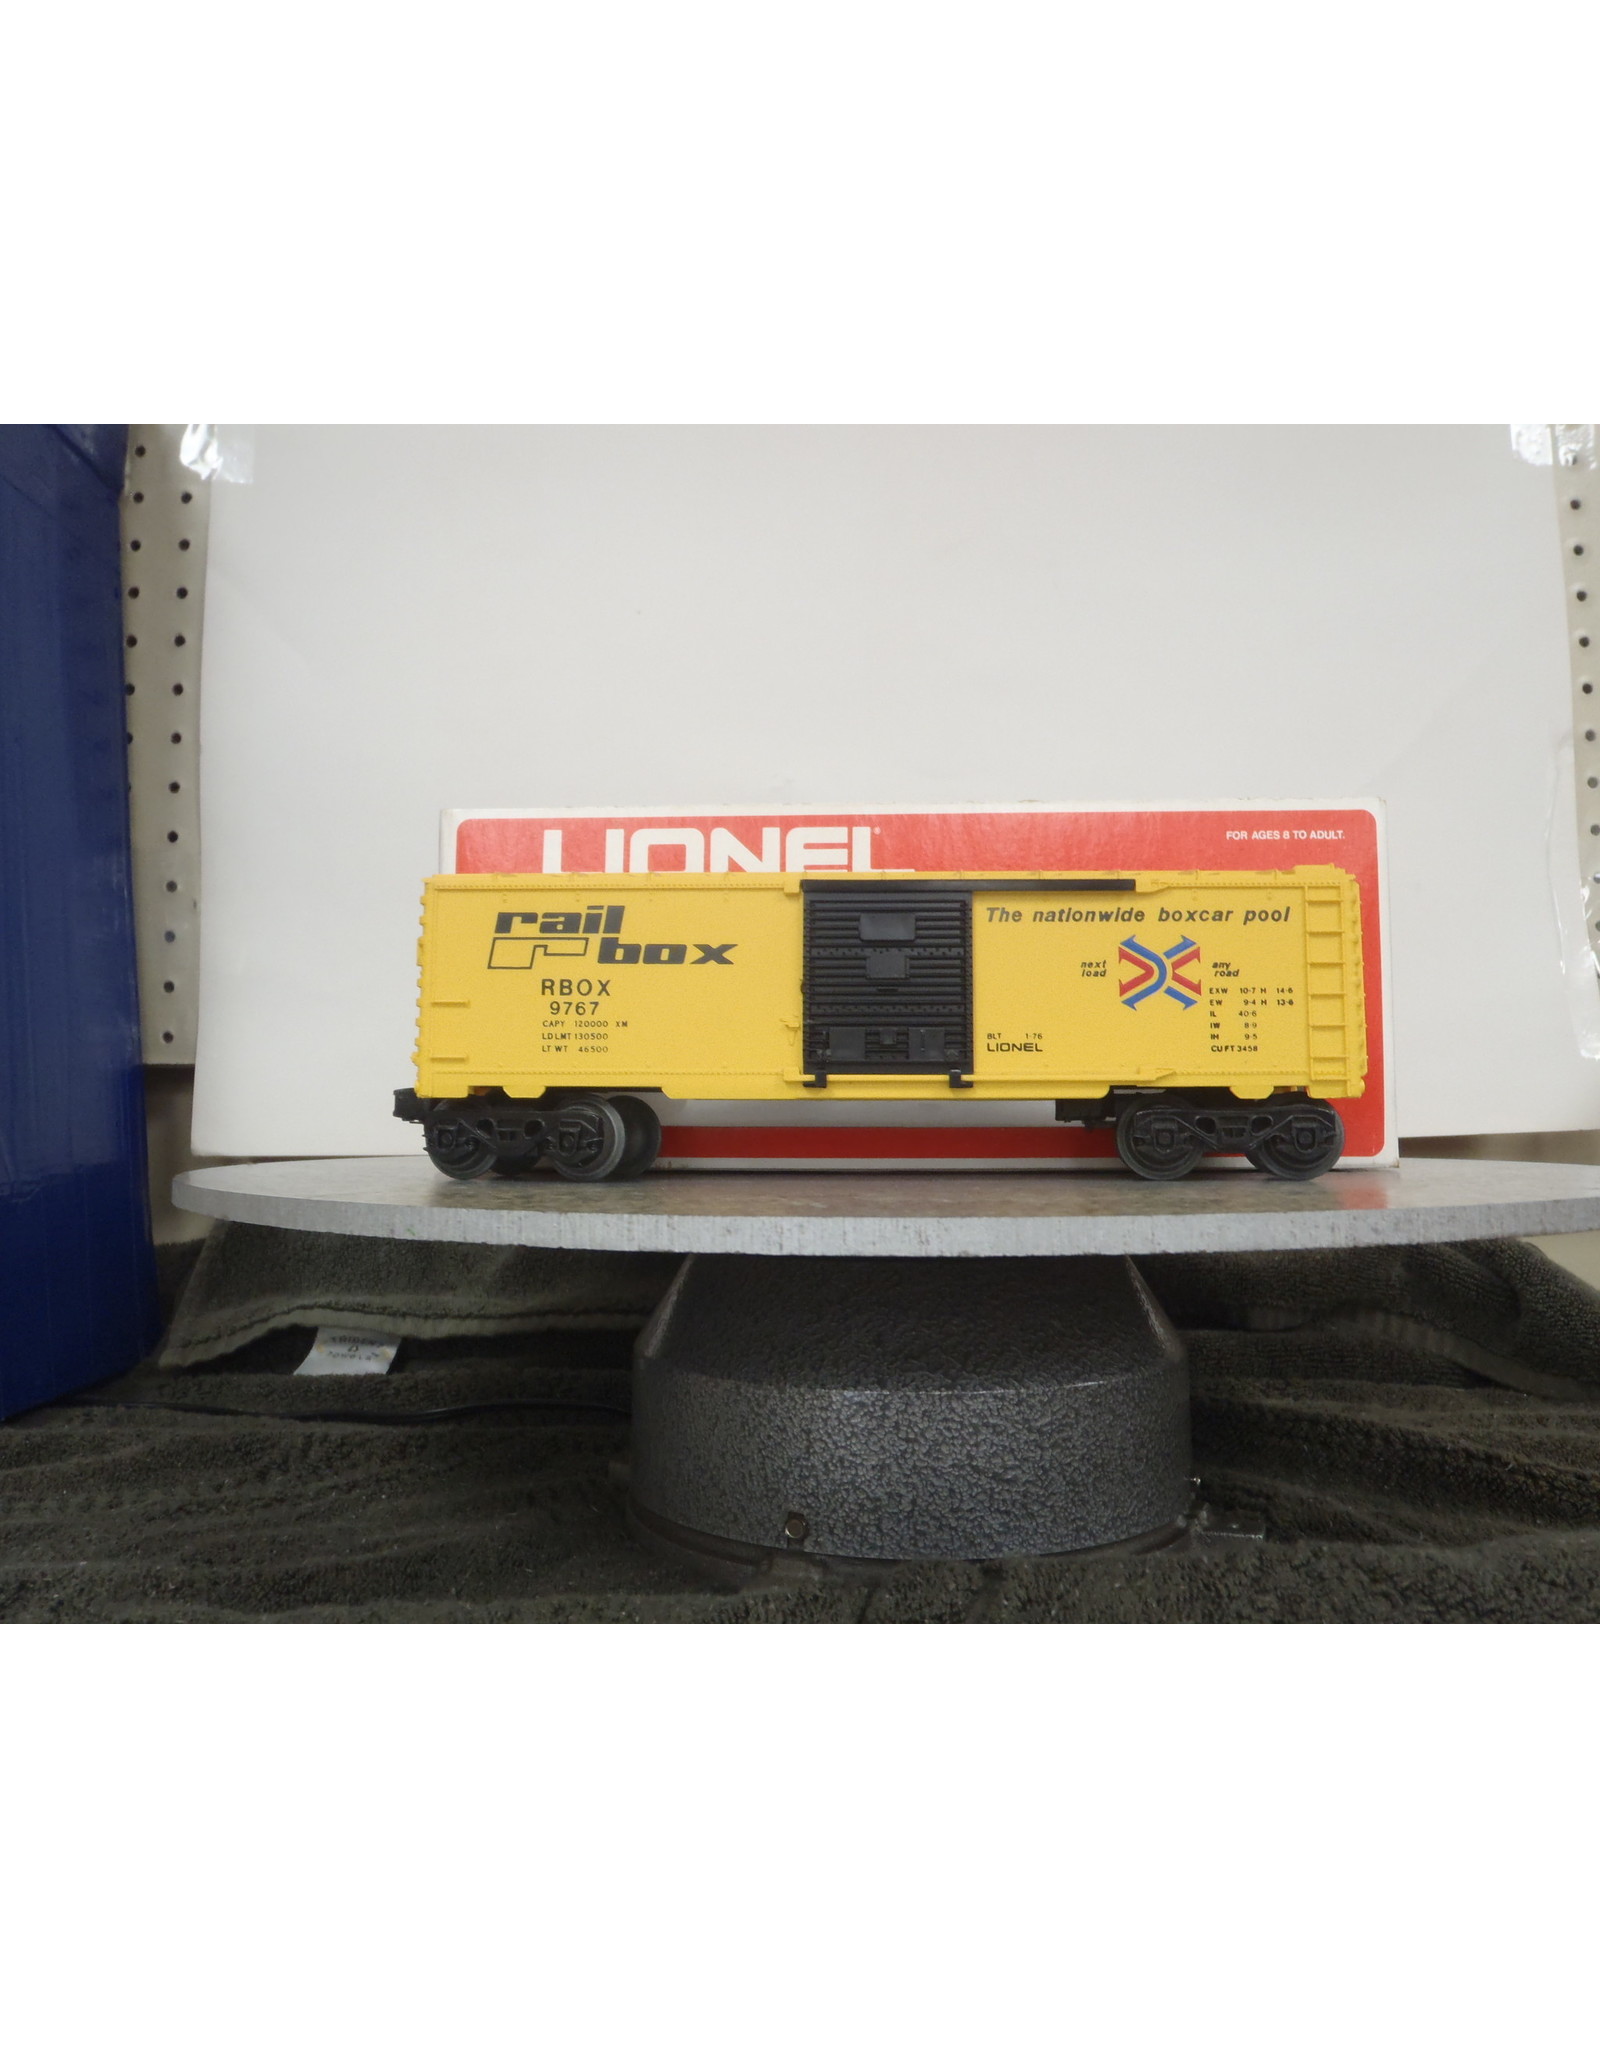 Lionel Boxcar Railbox 9767